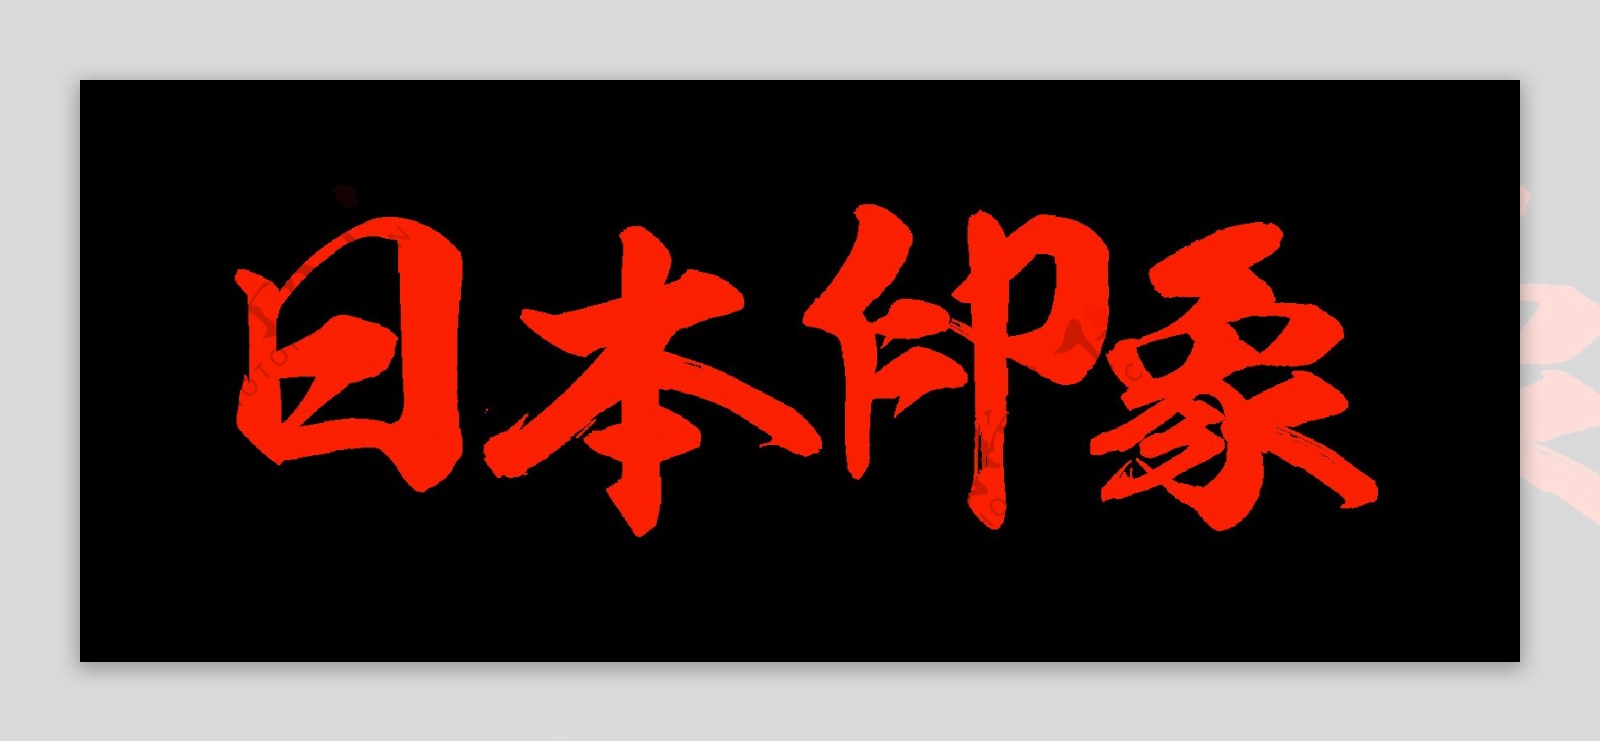 正红色字体日本旅游装饰元素